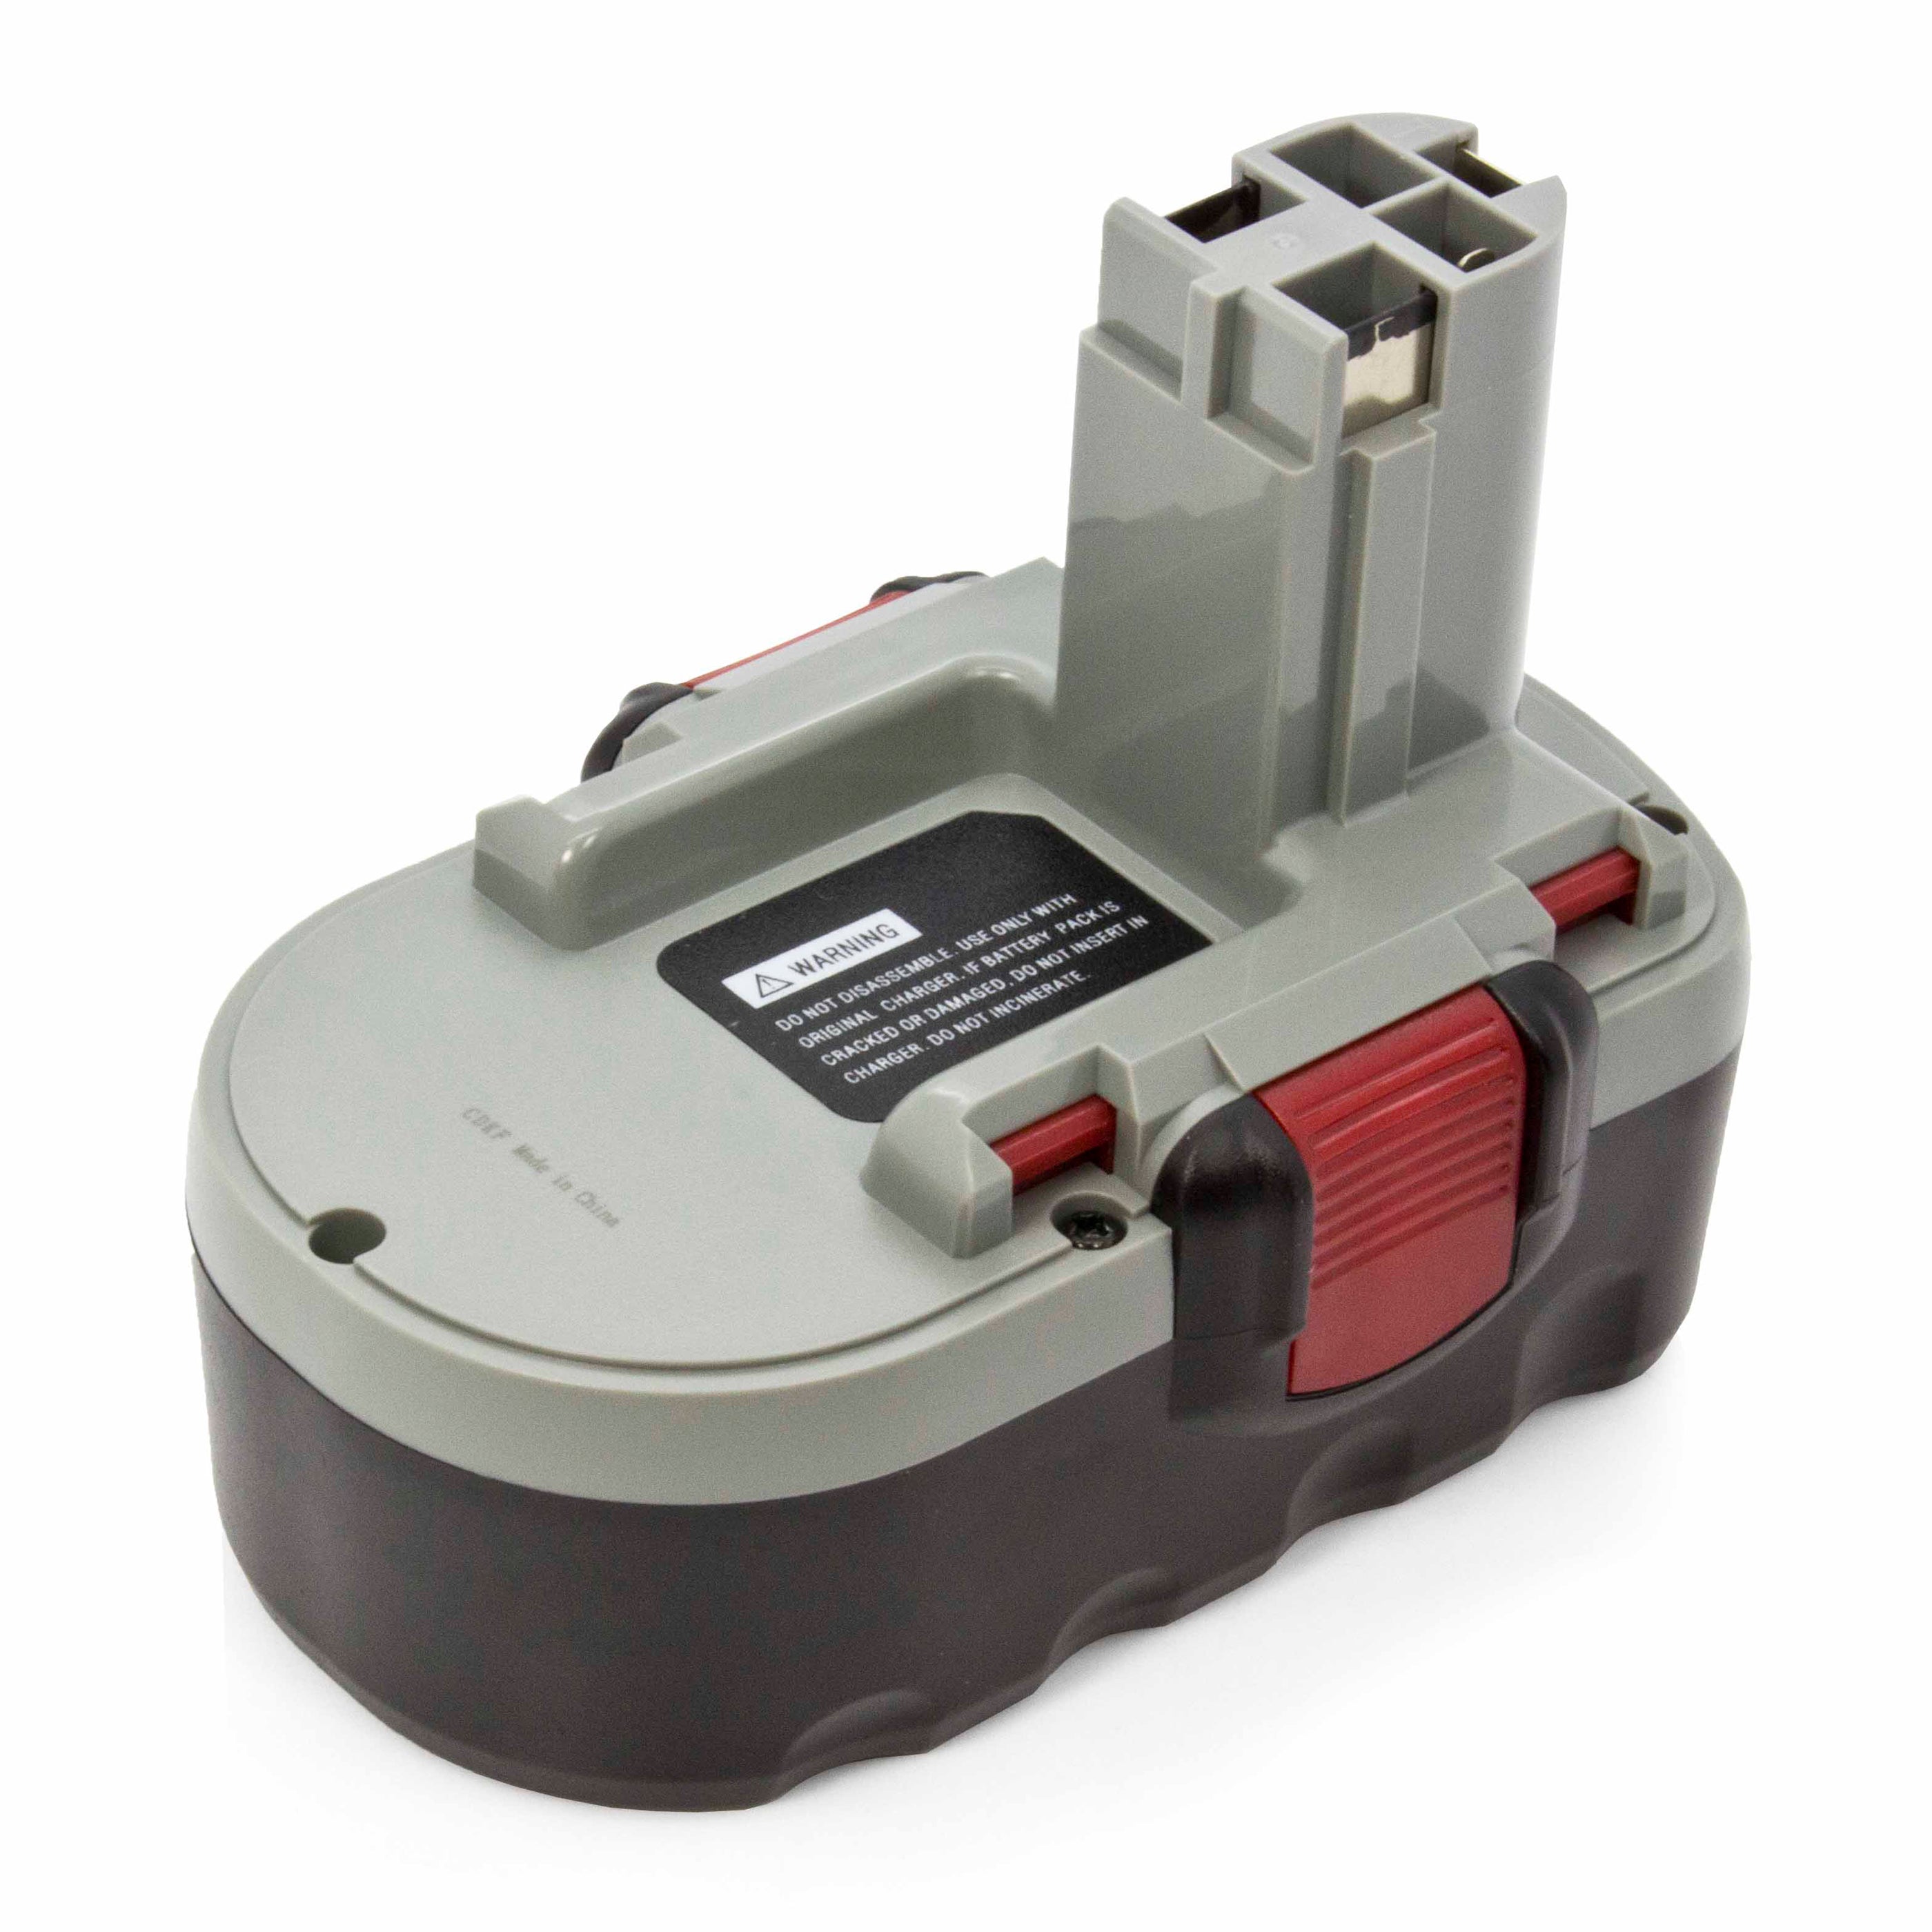 Bosch DIY Accessories 1600A011LD Starter kit PBA 18 Volt 2.5 Ah